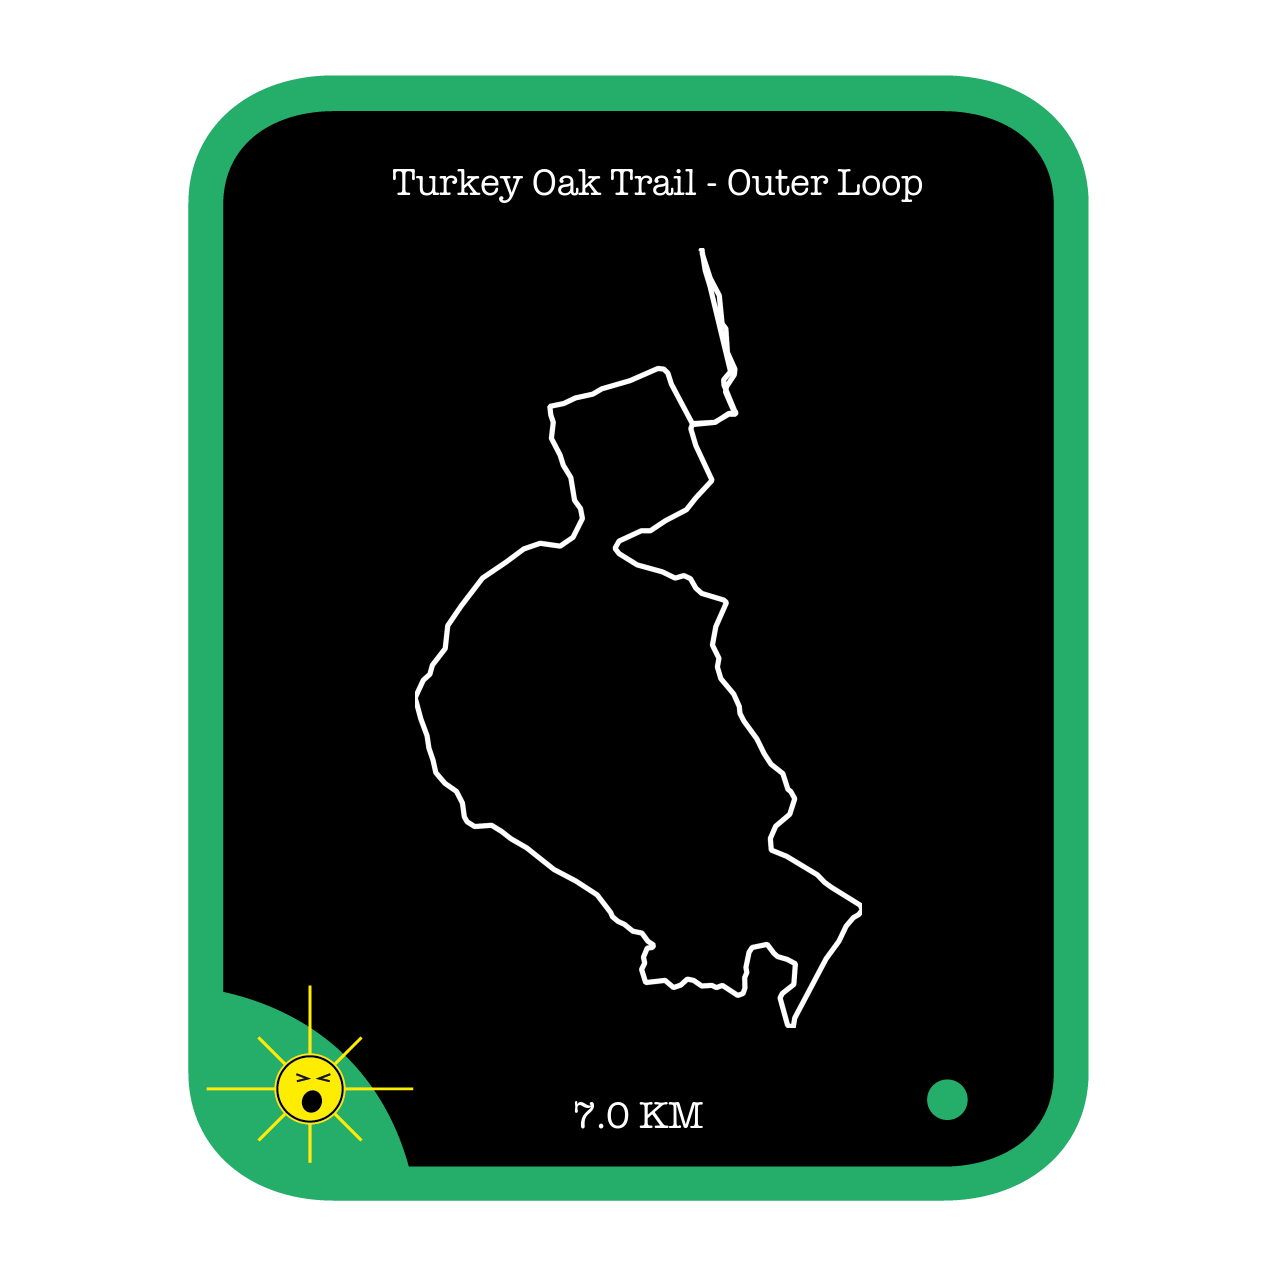 Turkey Oak Trail - Outer Loop